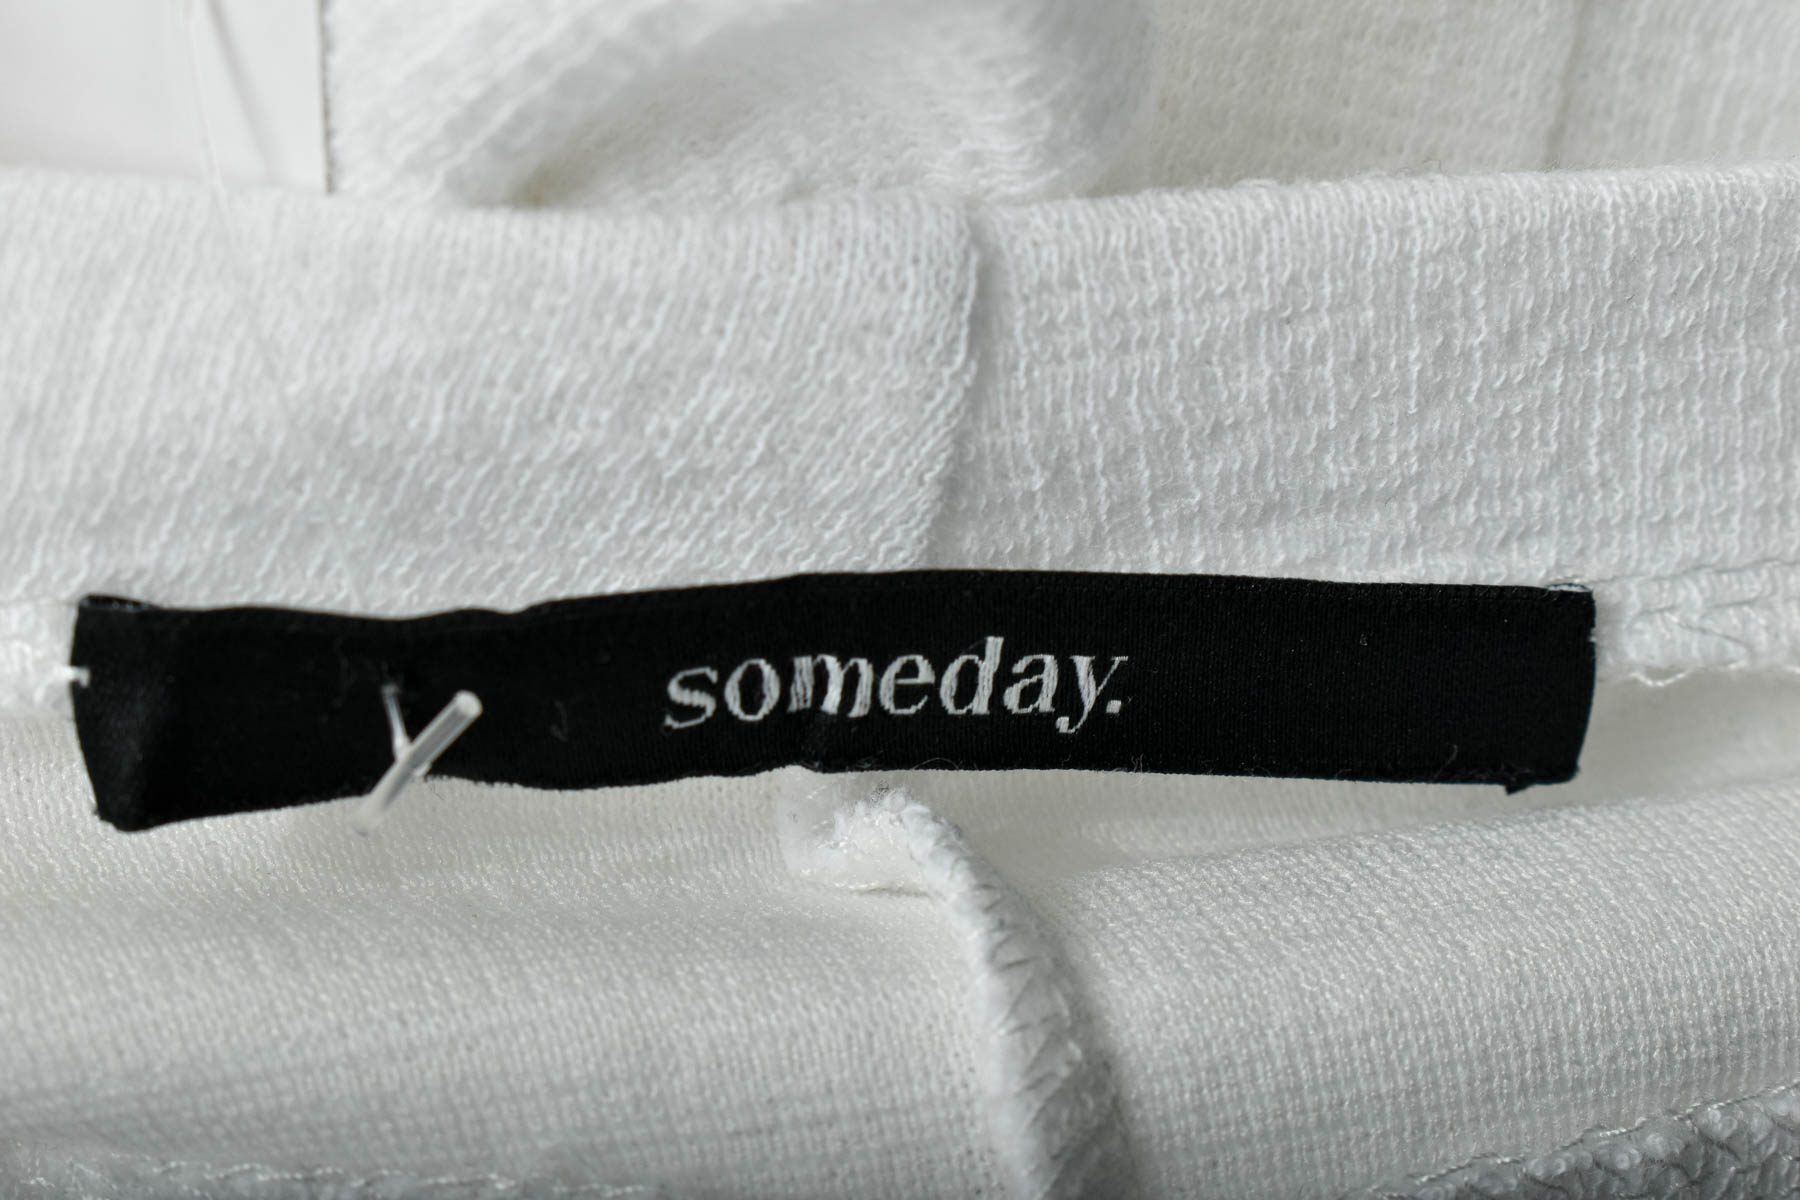 Γυναικεία μπλούζα - Someday. - 2